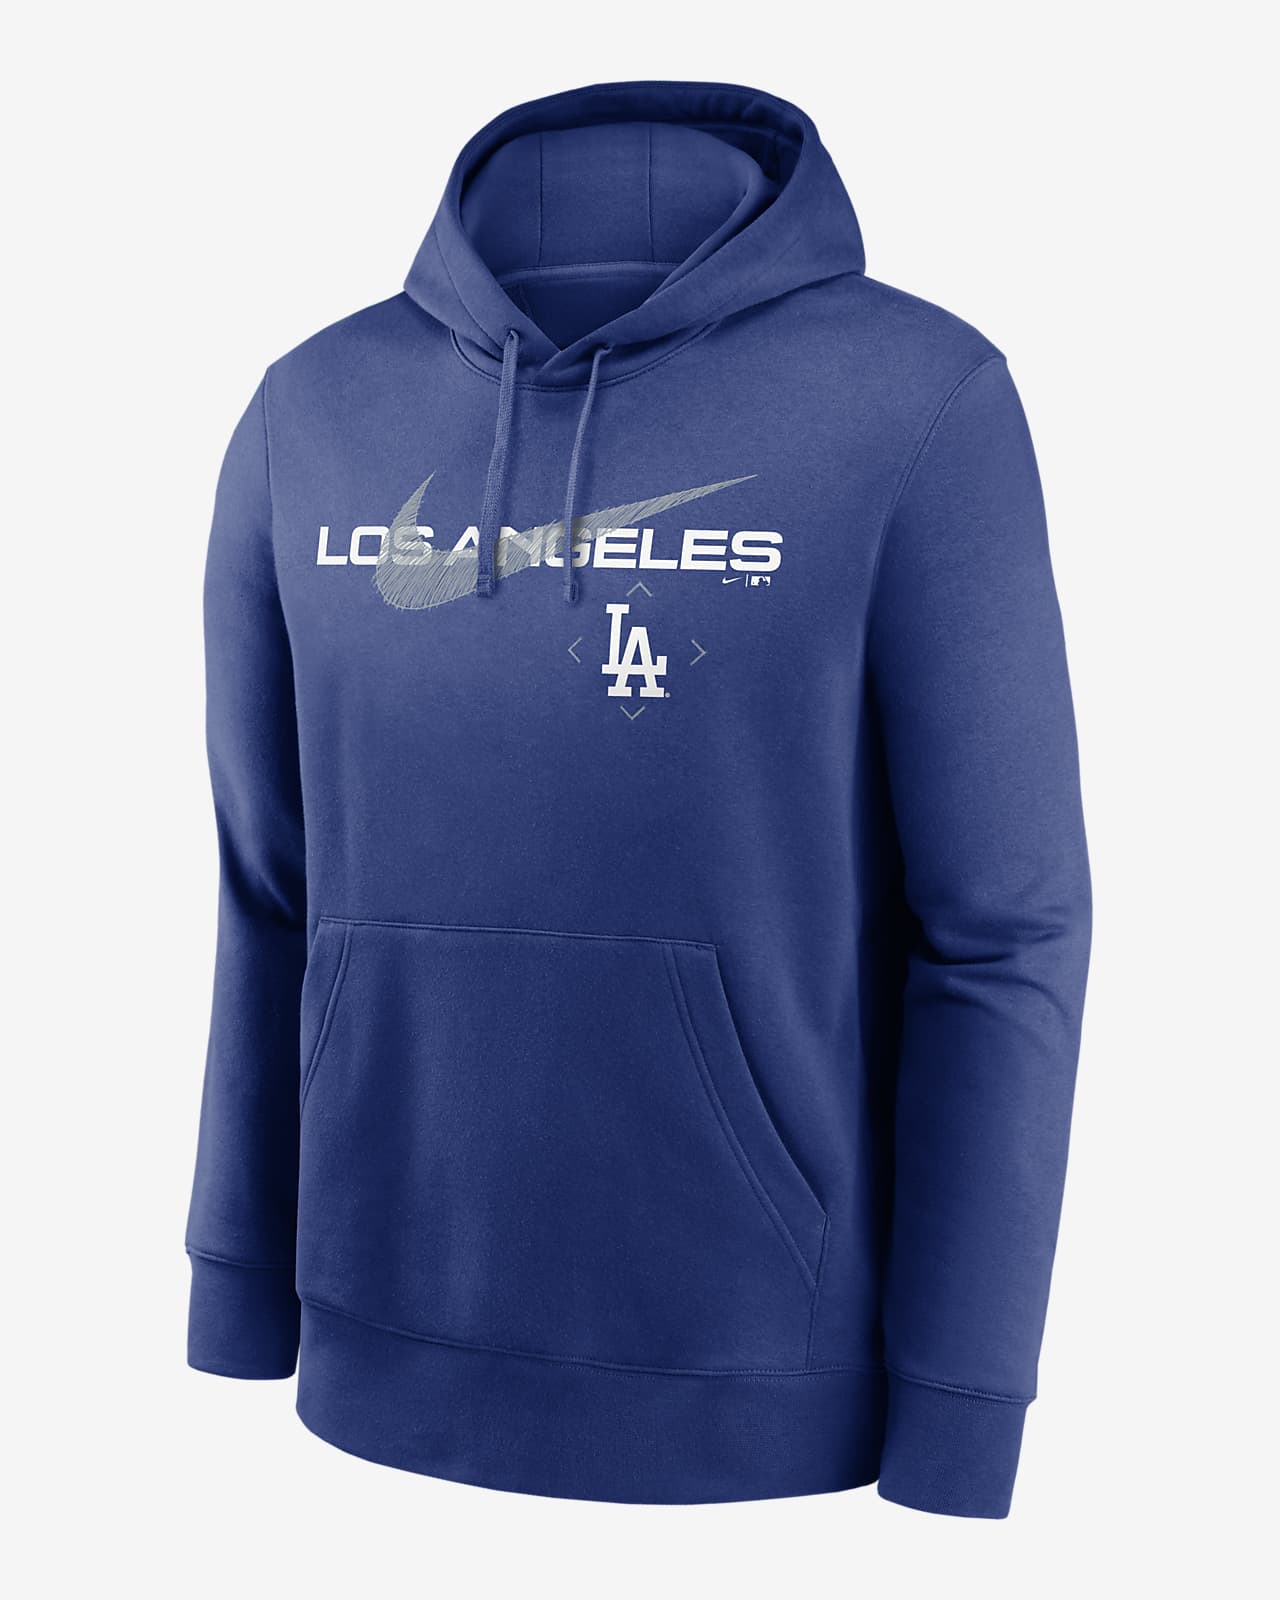 Nike Swoosh Neighborhood (MLB Los Angeles Dodgers) Men's Pullover Hoodie.